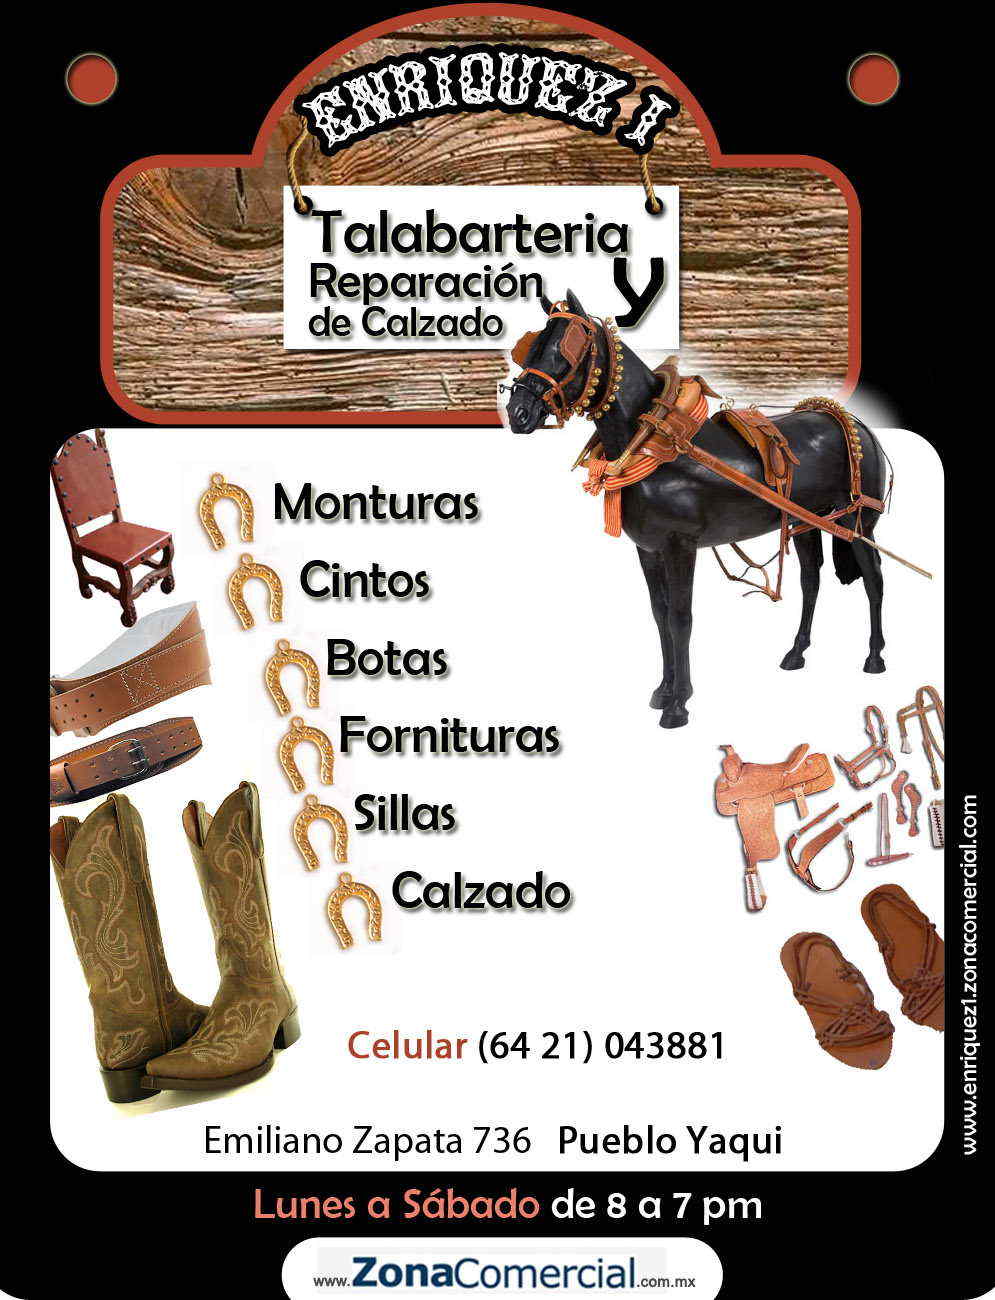 Enriquez 1 Talabarteria y Reparacion de Calzado-talabarteria y reparacion de calzado, monturas,cintos,botas,fornituras,sillas calzado